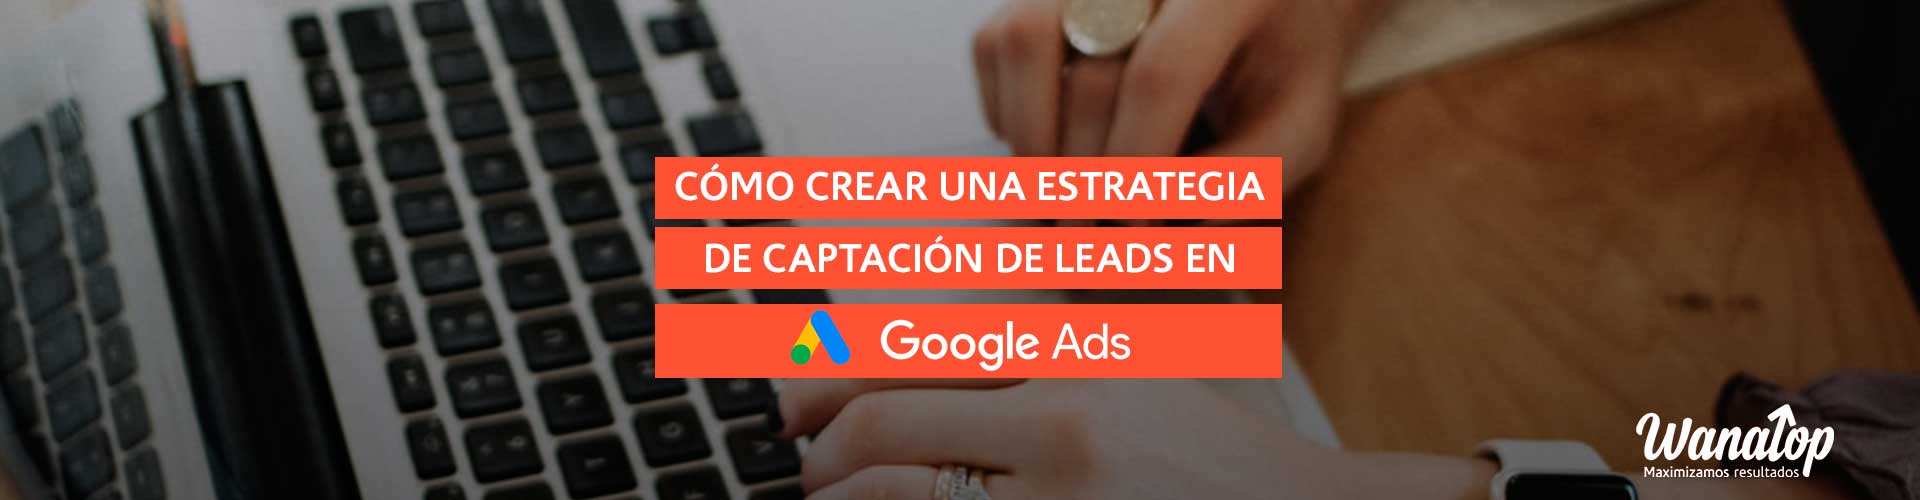 Cómo crear una estrategia de captación de leads en Google Ads